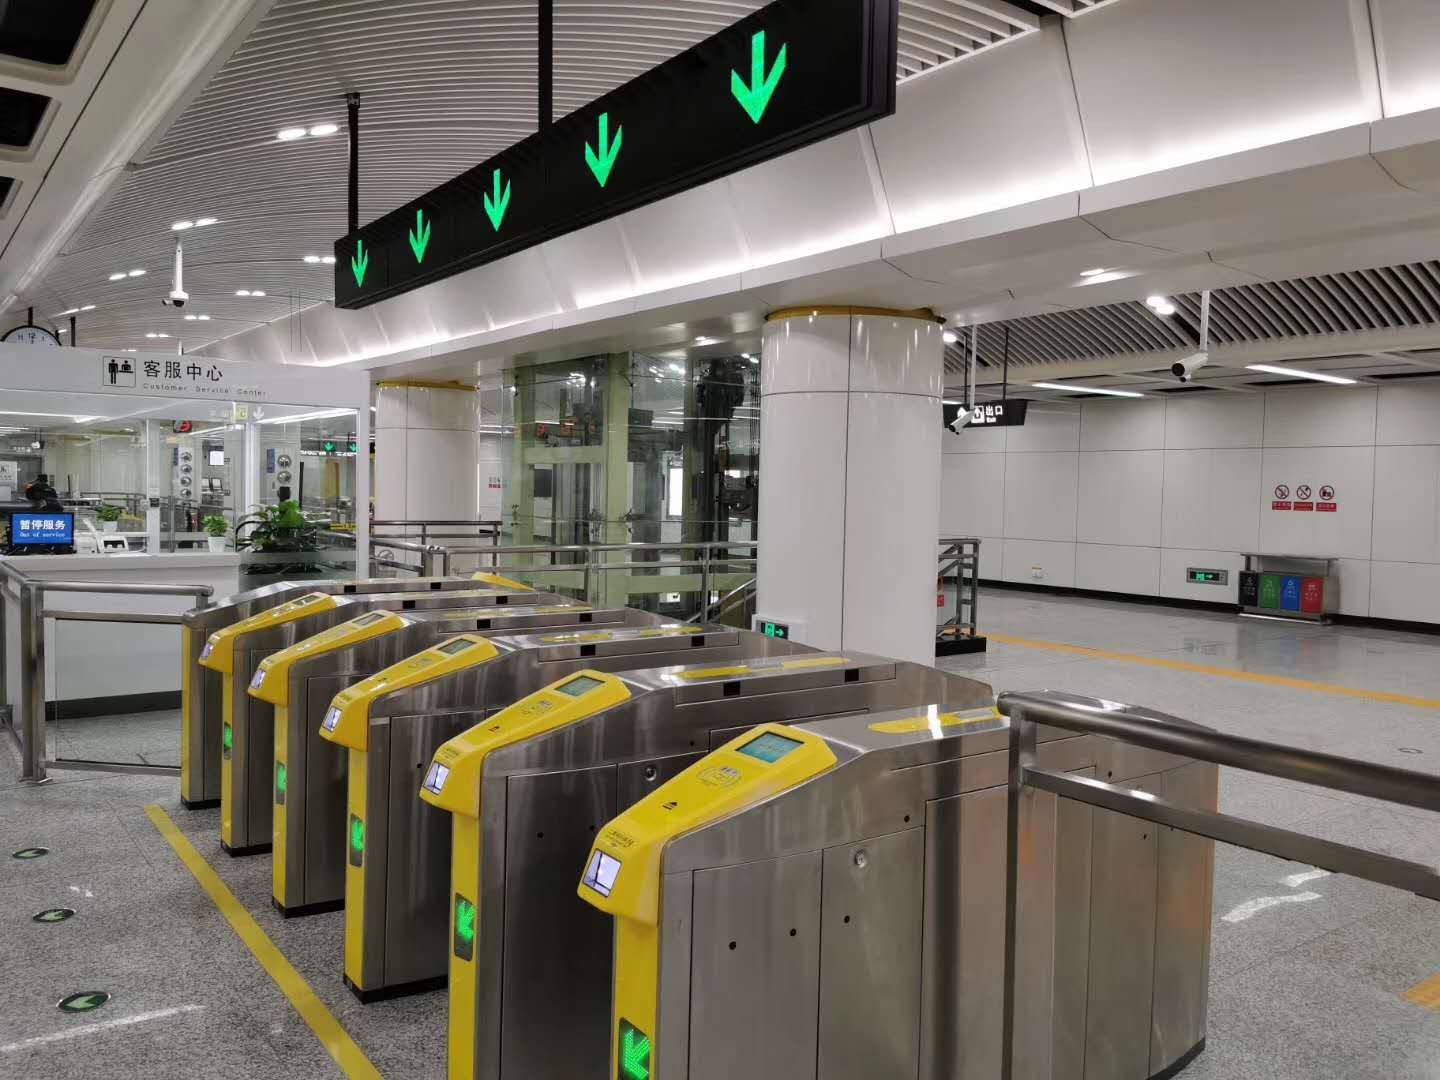 乘坐南京地铁 S9 号线是一种怎样的体验？ - 知乎